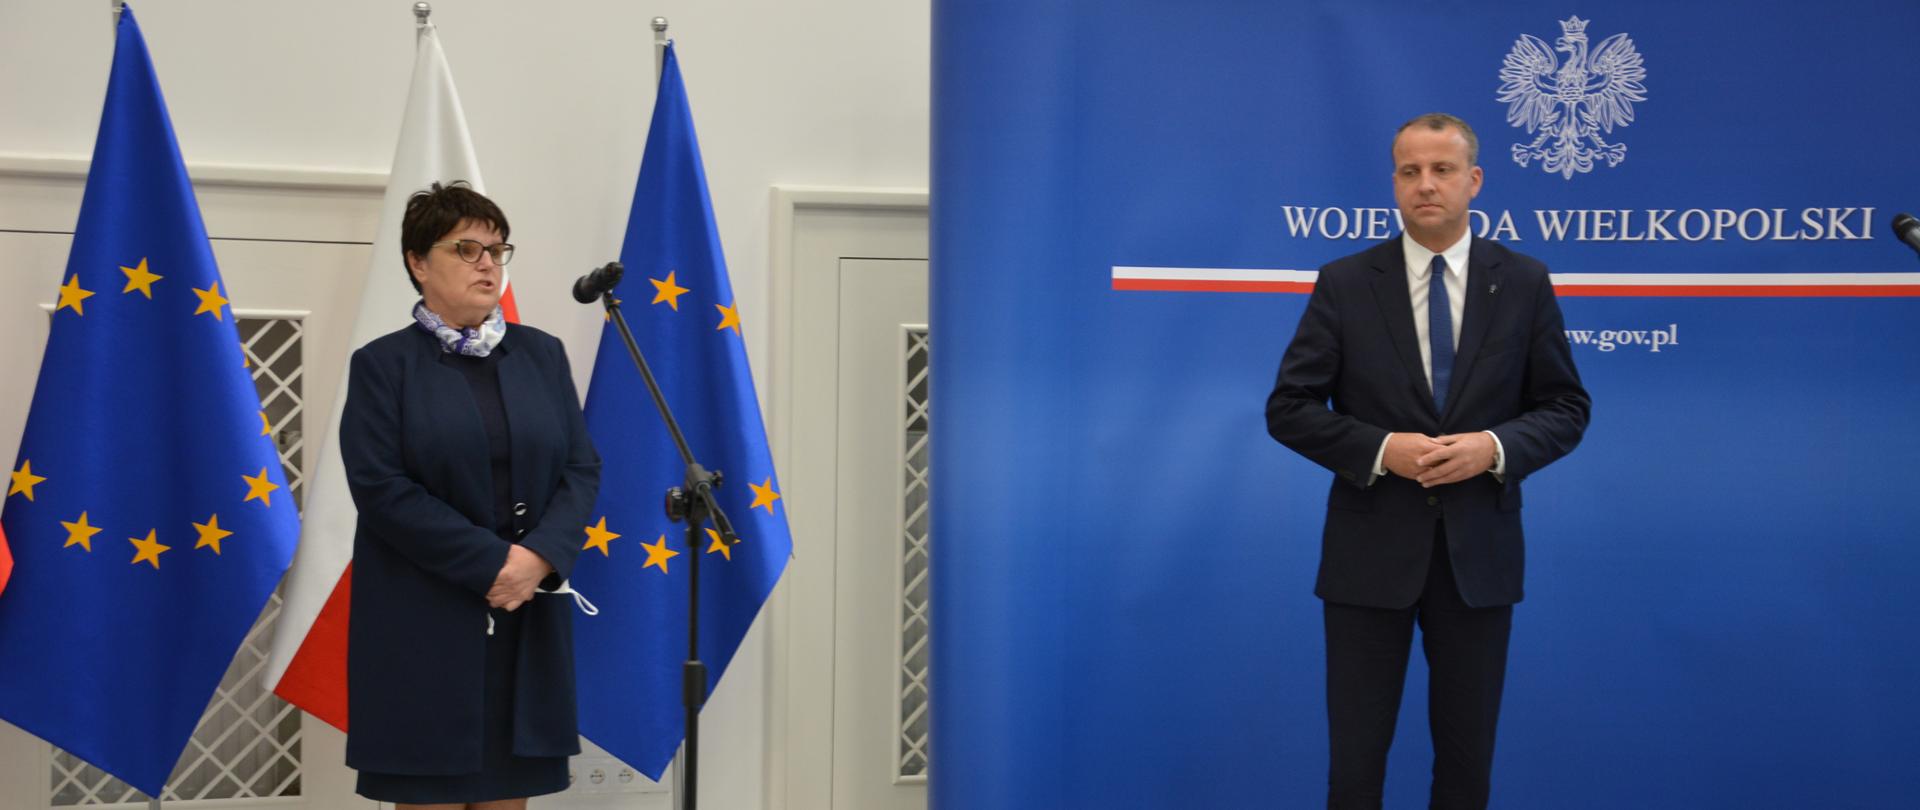 Konferencja prasowa - na zdjęciu WPWIS Jadwiga Kuczma-Napierała i Wojewoda Wielkopolski Michał Zieliński w trakcje konferencji prasowej. 